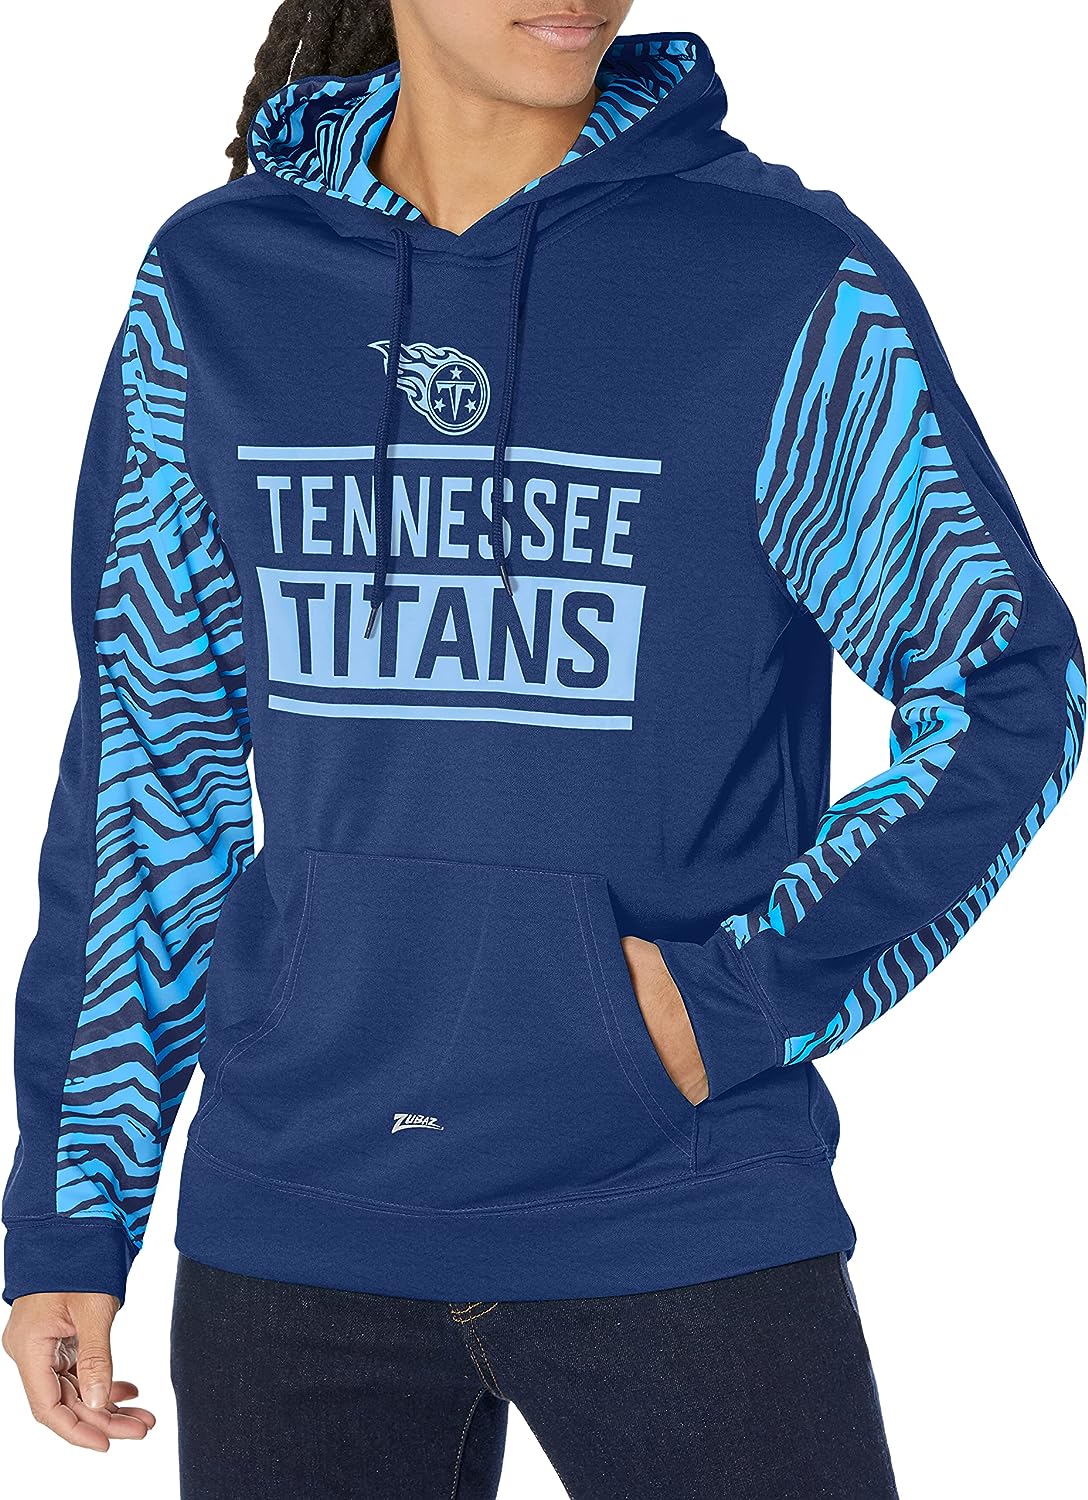 Zubaz NFL Men's Tennessee Titans Team Color with Zebra Accents